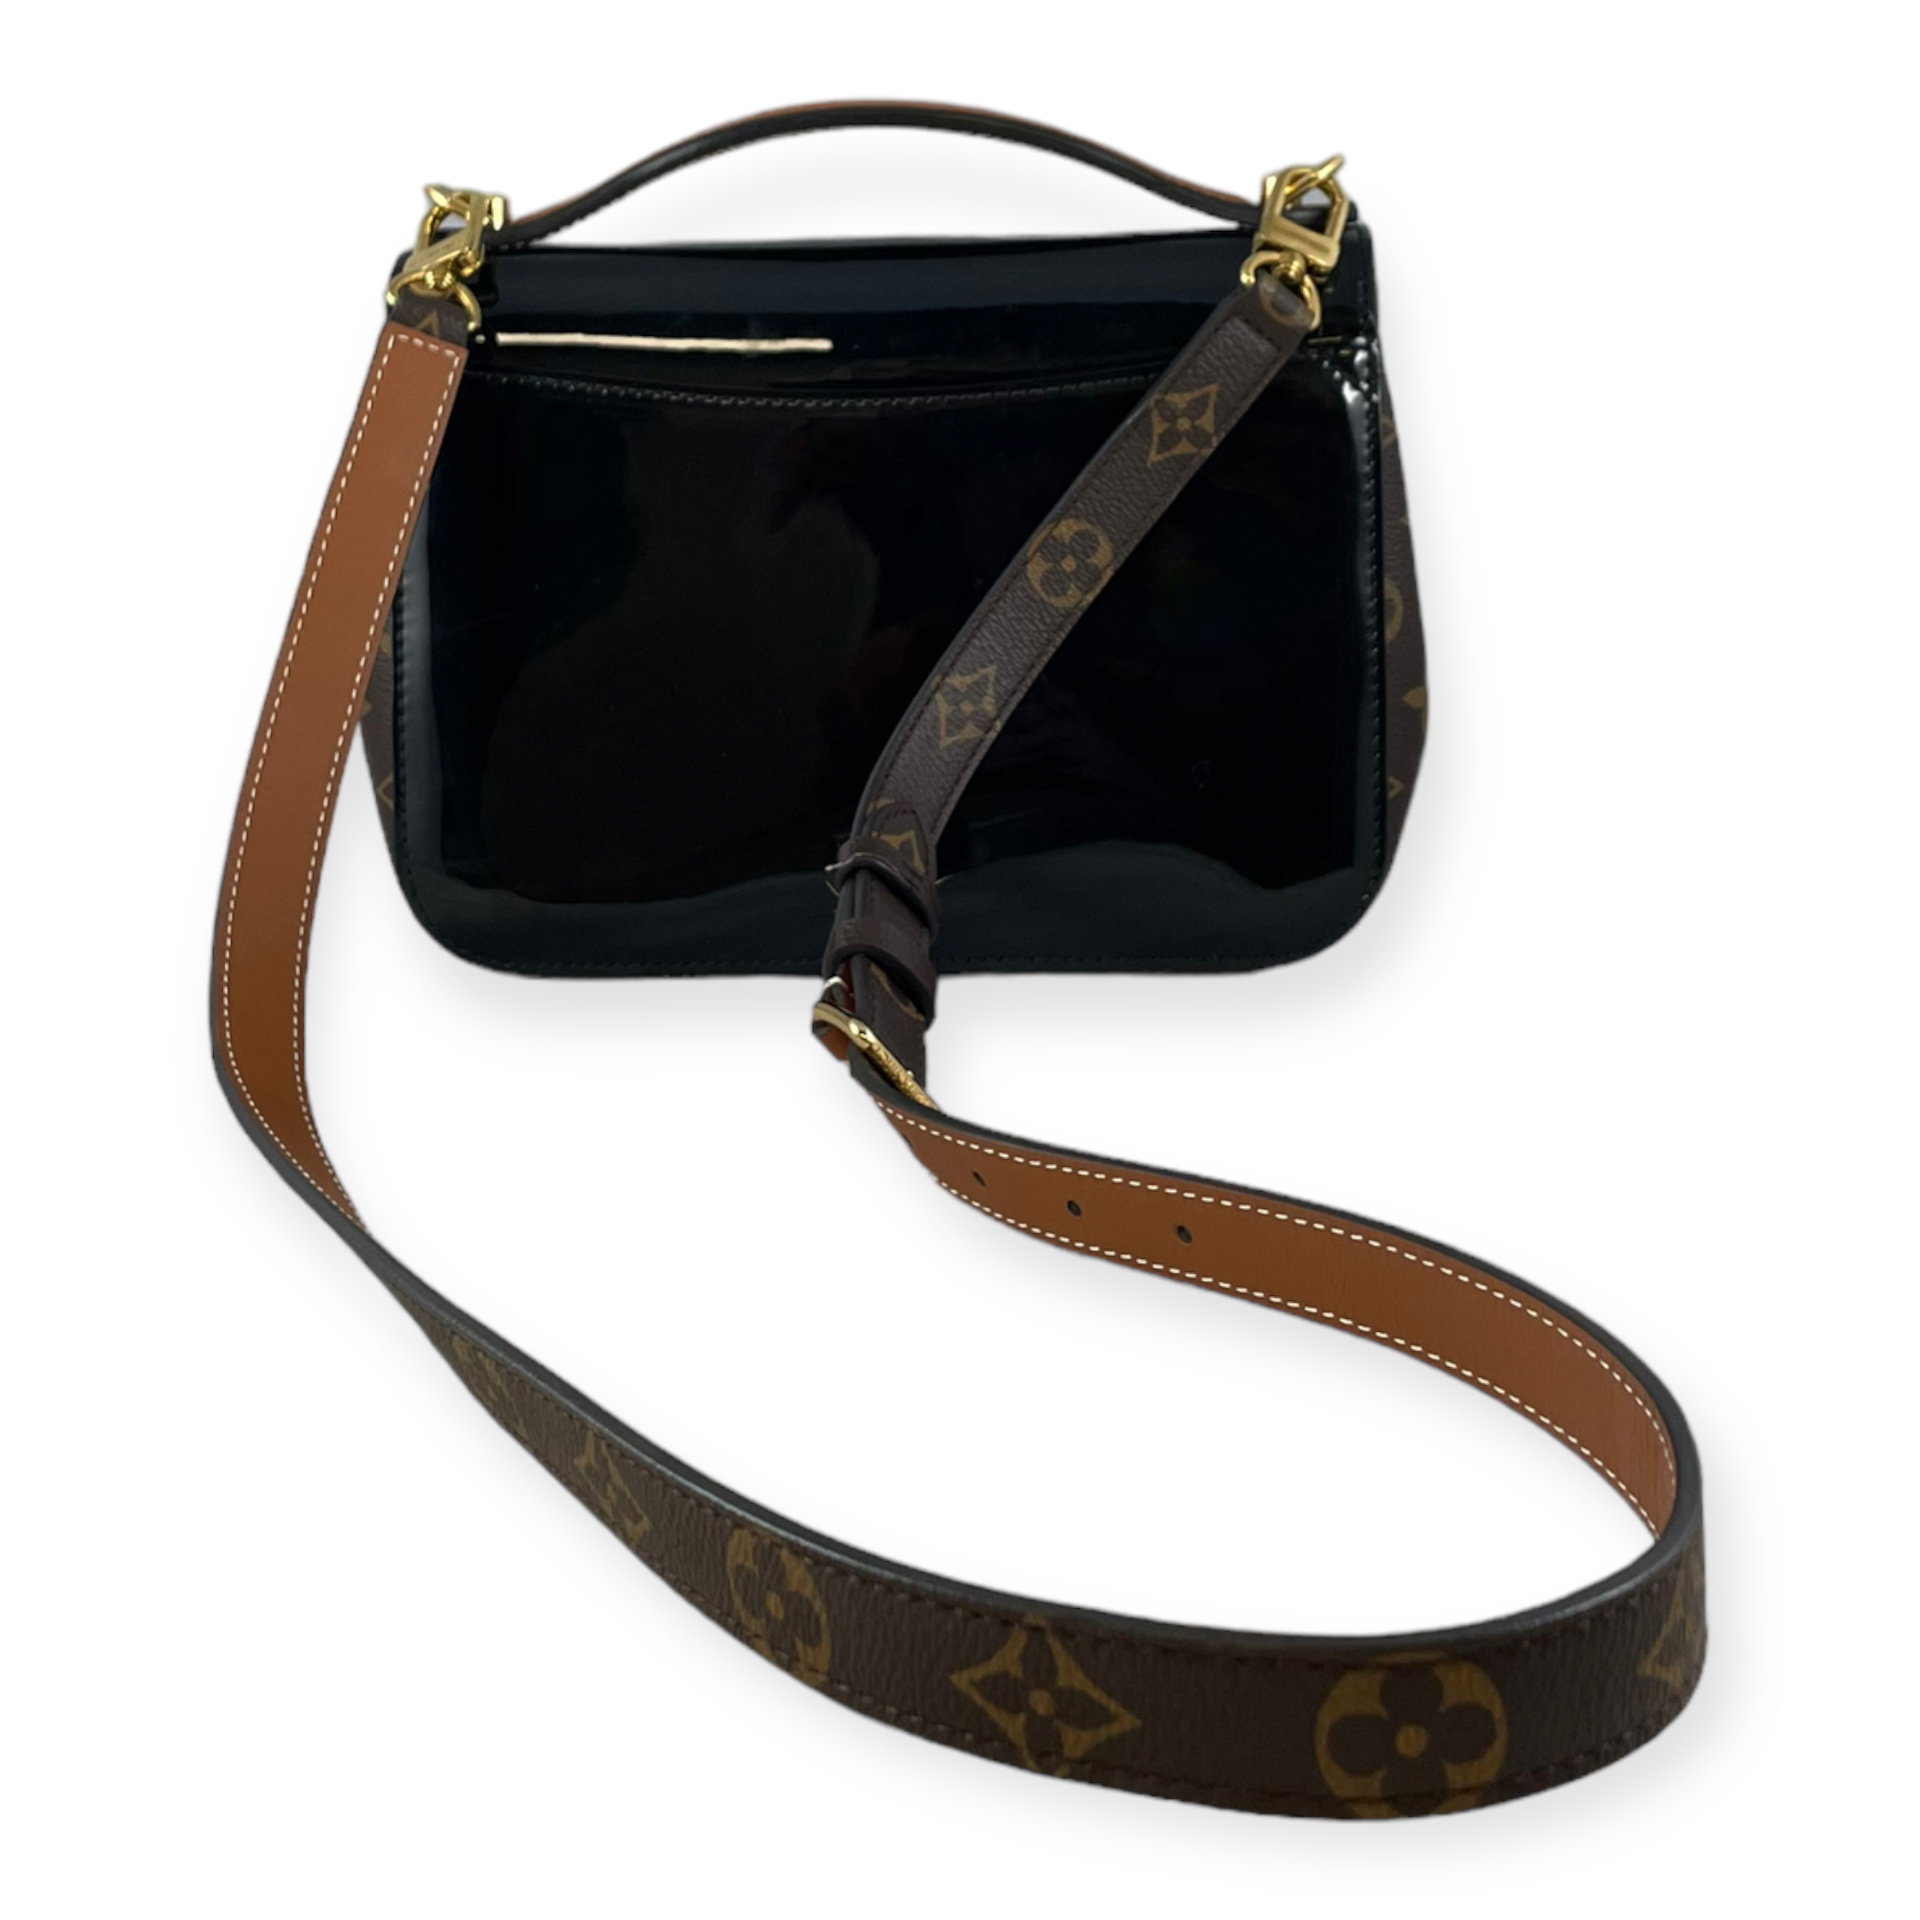 Louis Vuitton Cherrywood Top Handle Handbag - More Than You Can